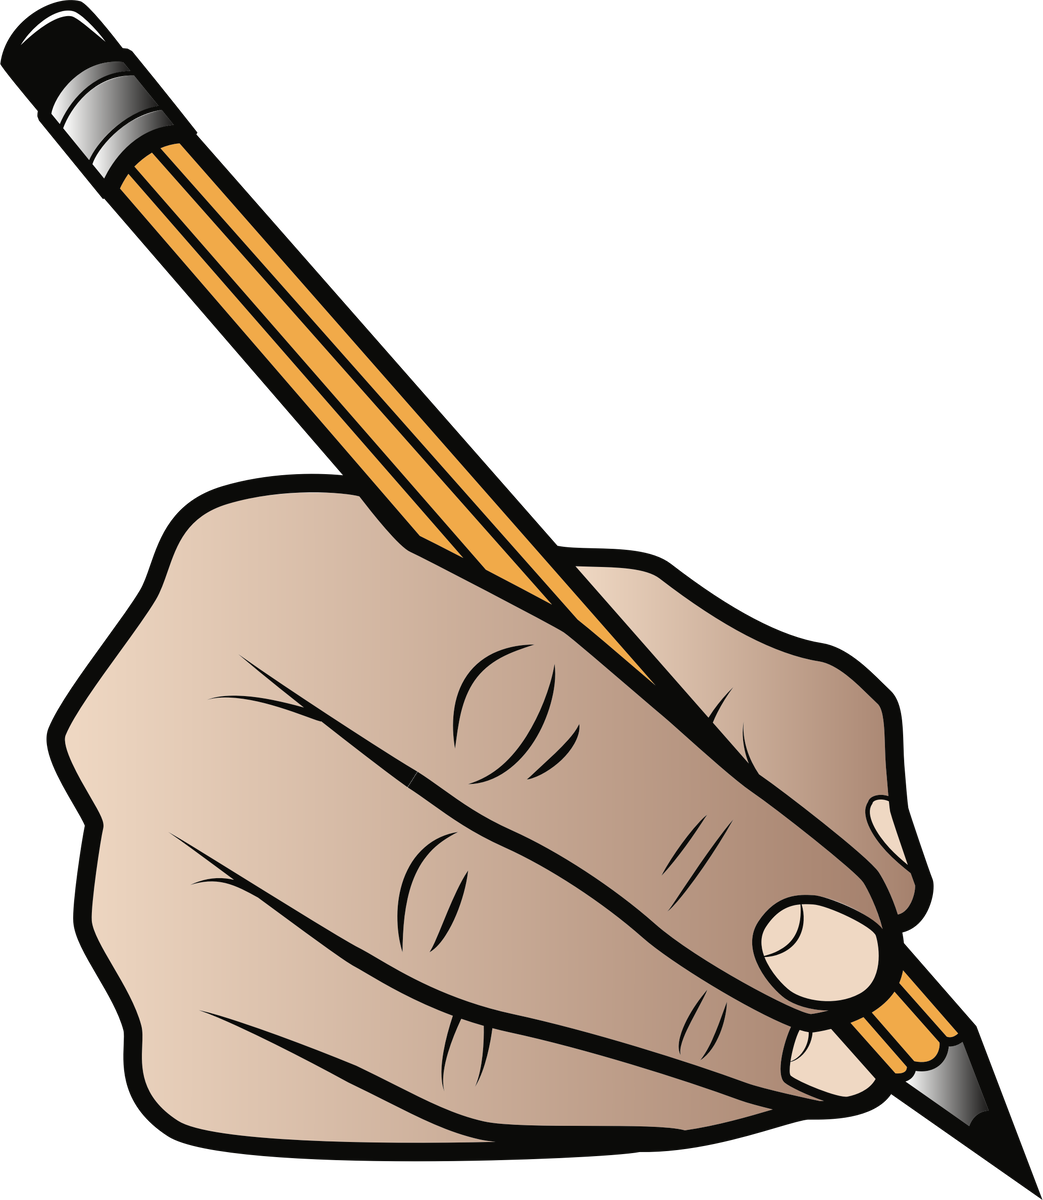 Написать drawing. Изображение карандаша. Рисунки карандашом. Рука держит карандаш. Что нарисовать карандашом.